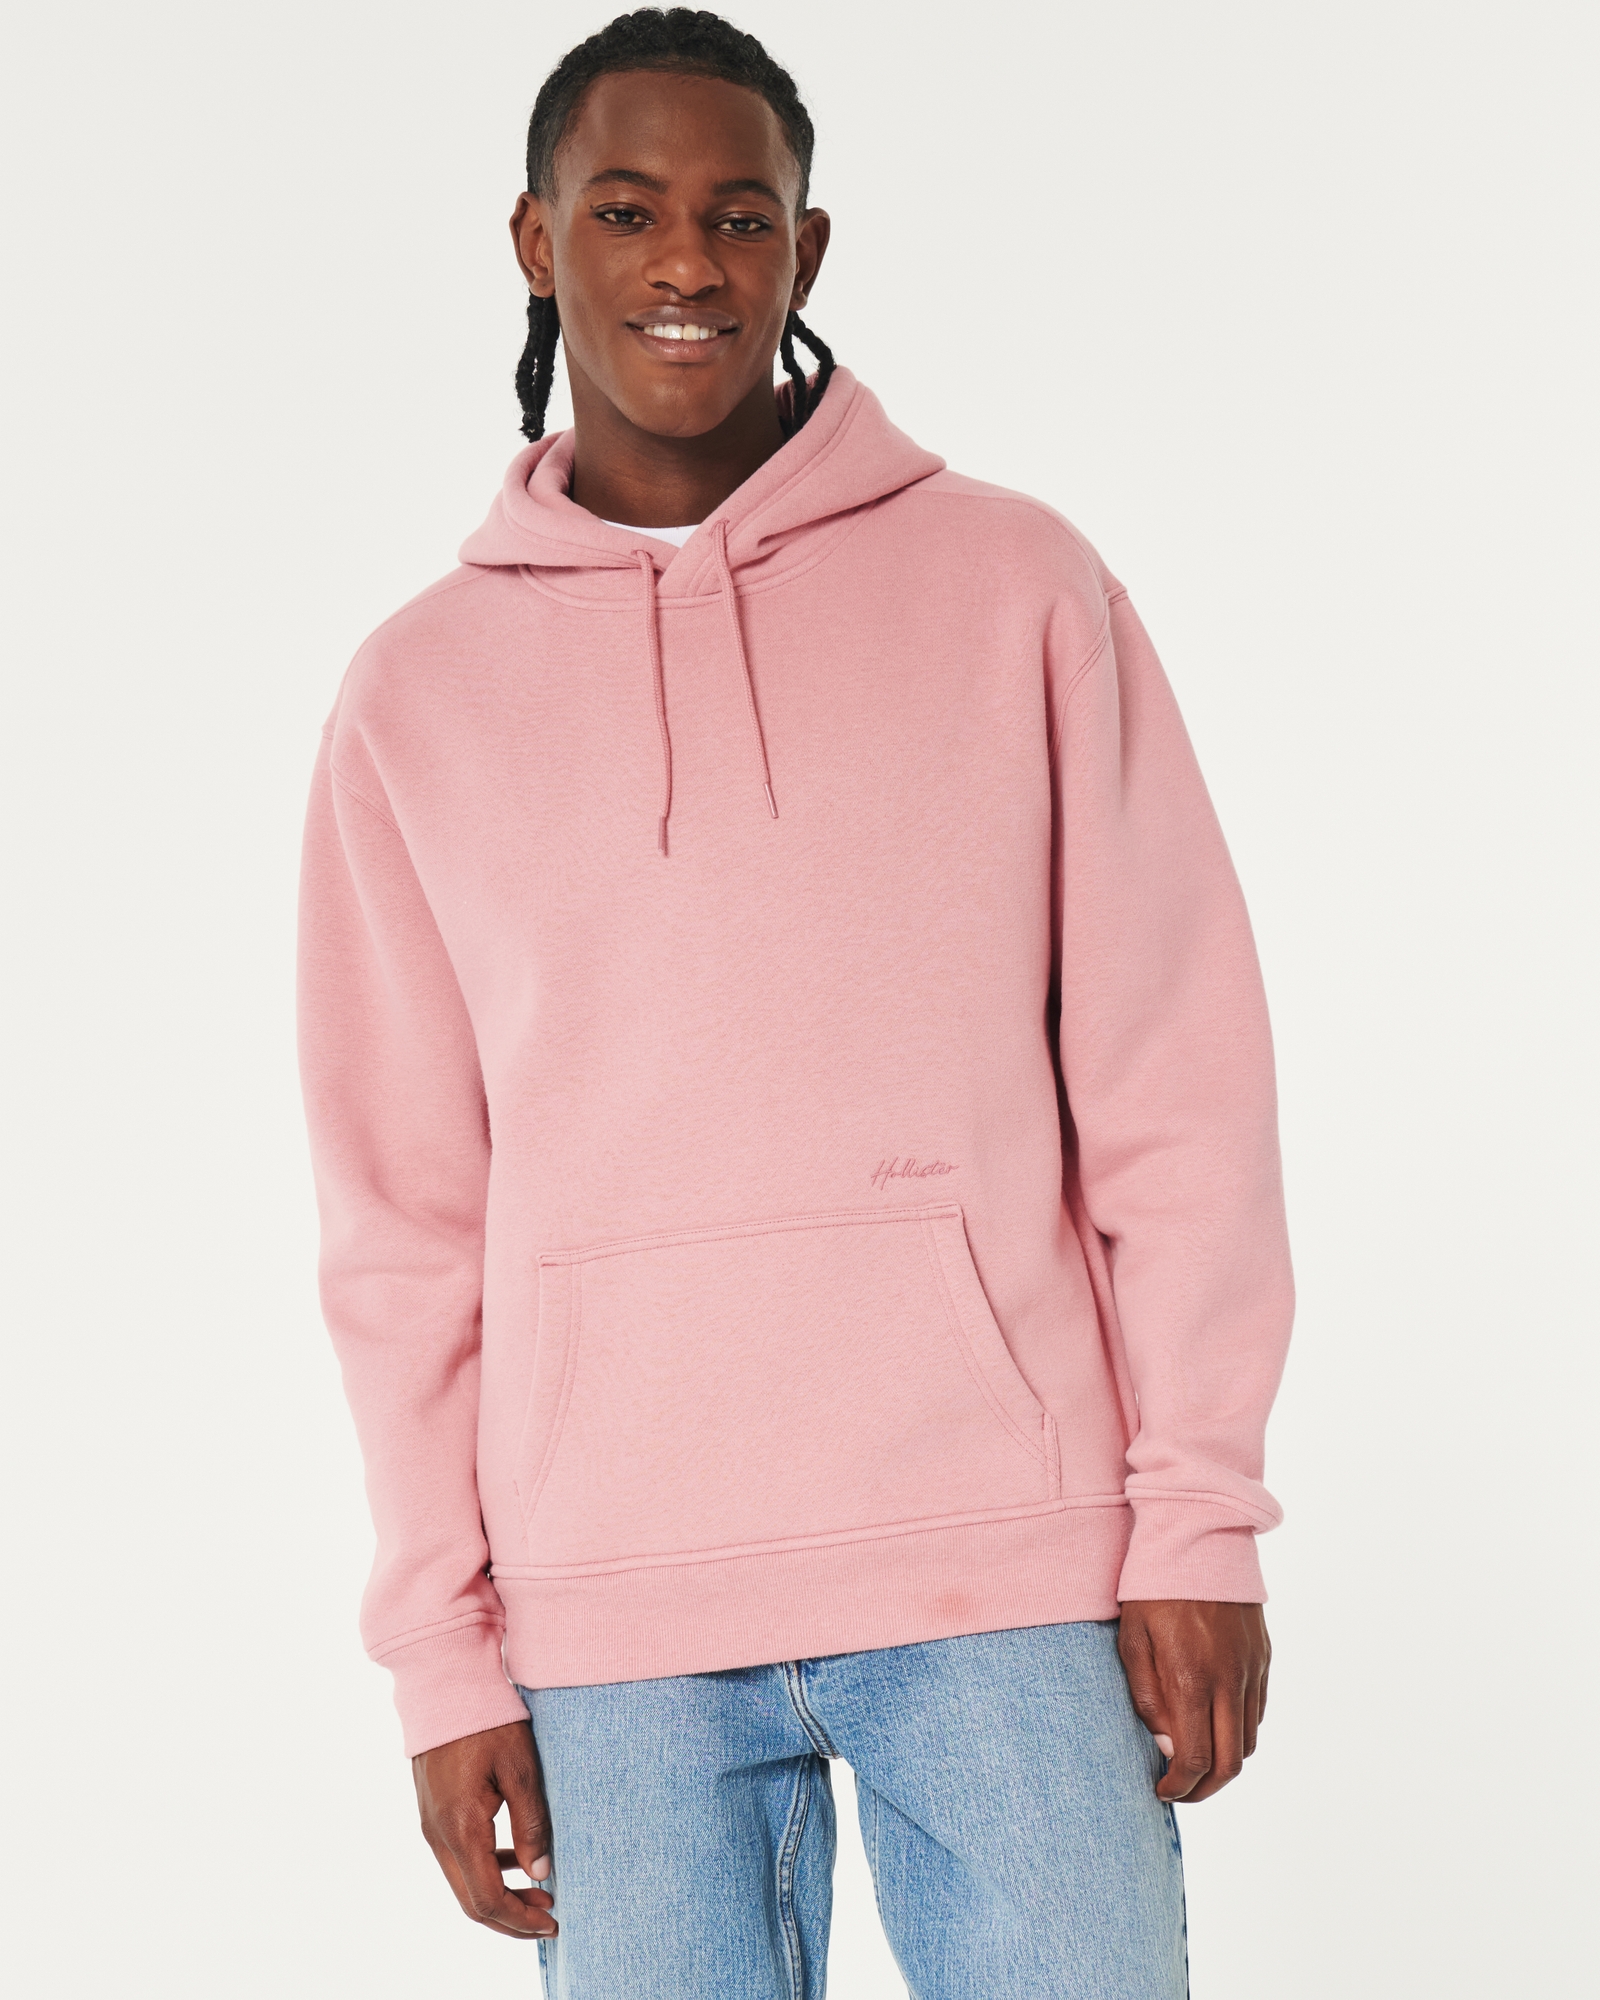 Hollister hoodie sweatshirt gradient fade must-have active size medium